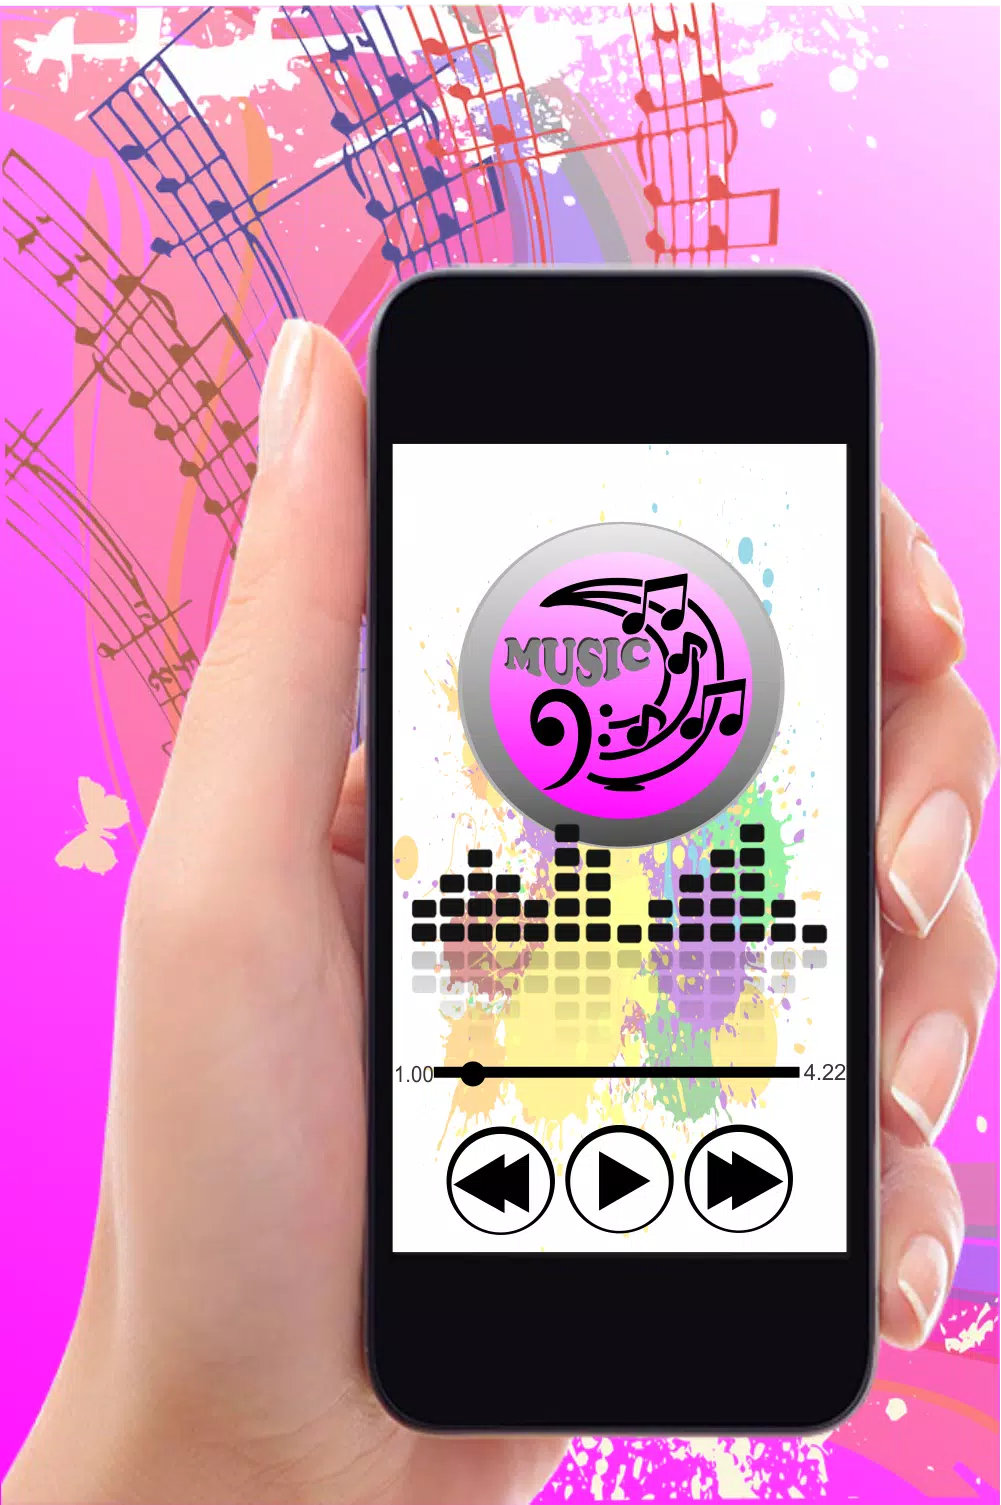 Despacito Luis Fonsi mp3 download 🎵 APK pour Android Télécharger